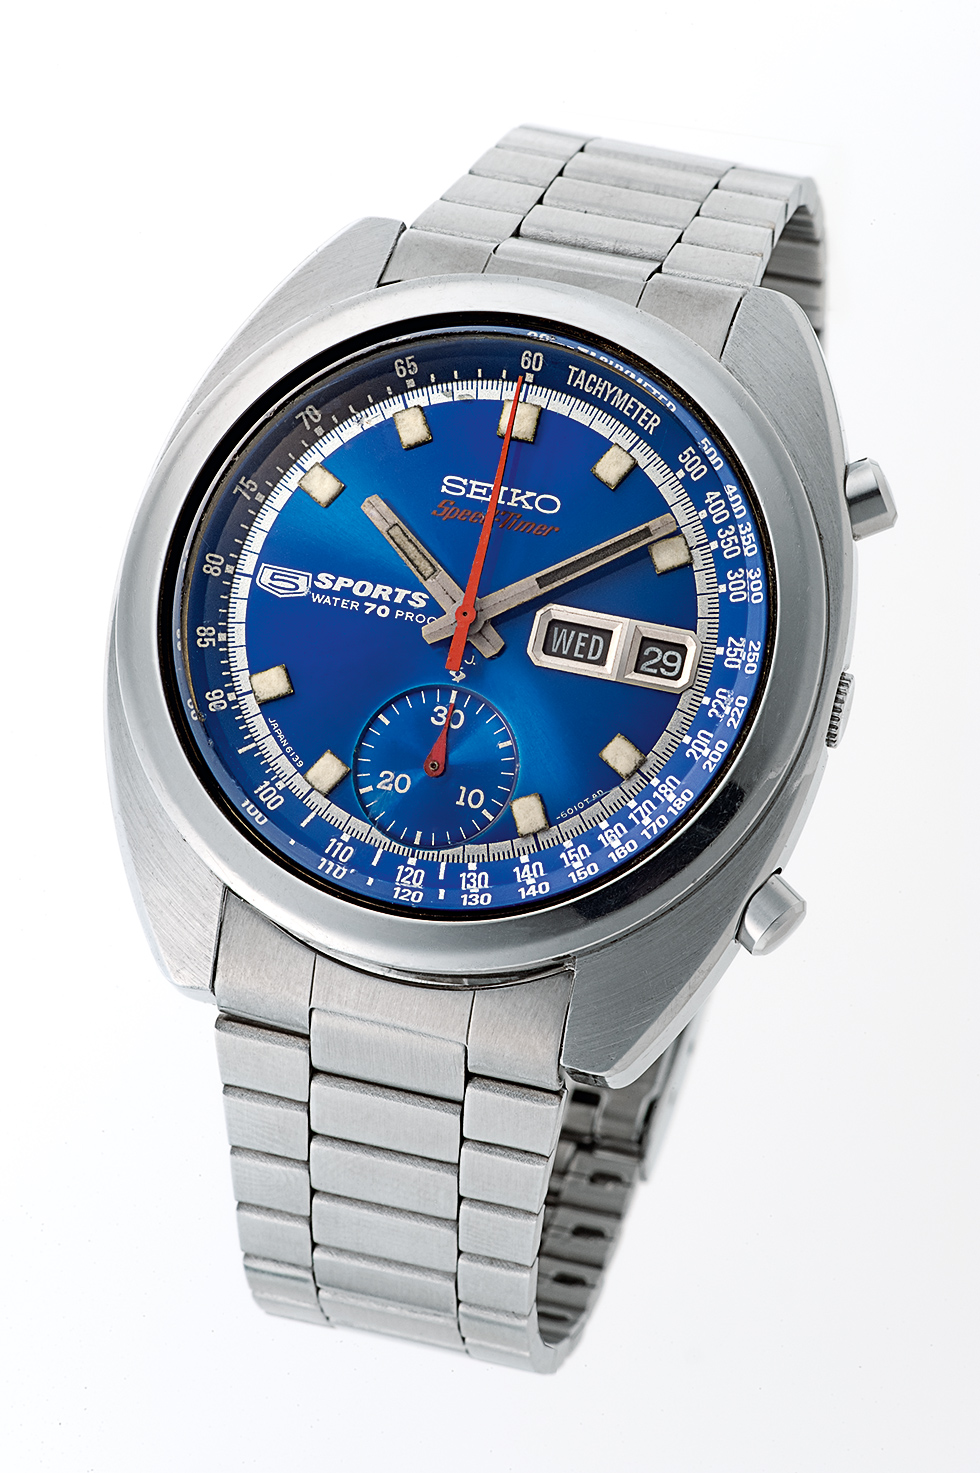 Seiko 6139 5-Speed Timer Chronograph